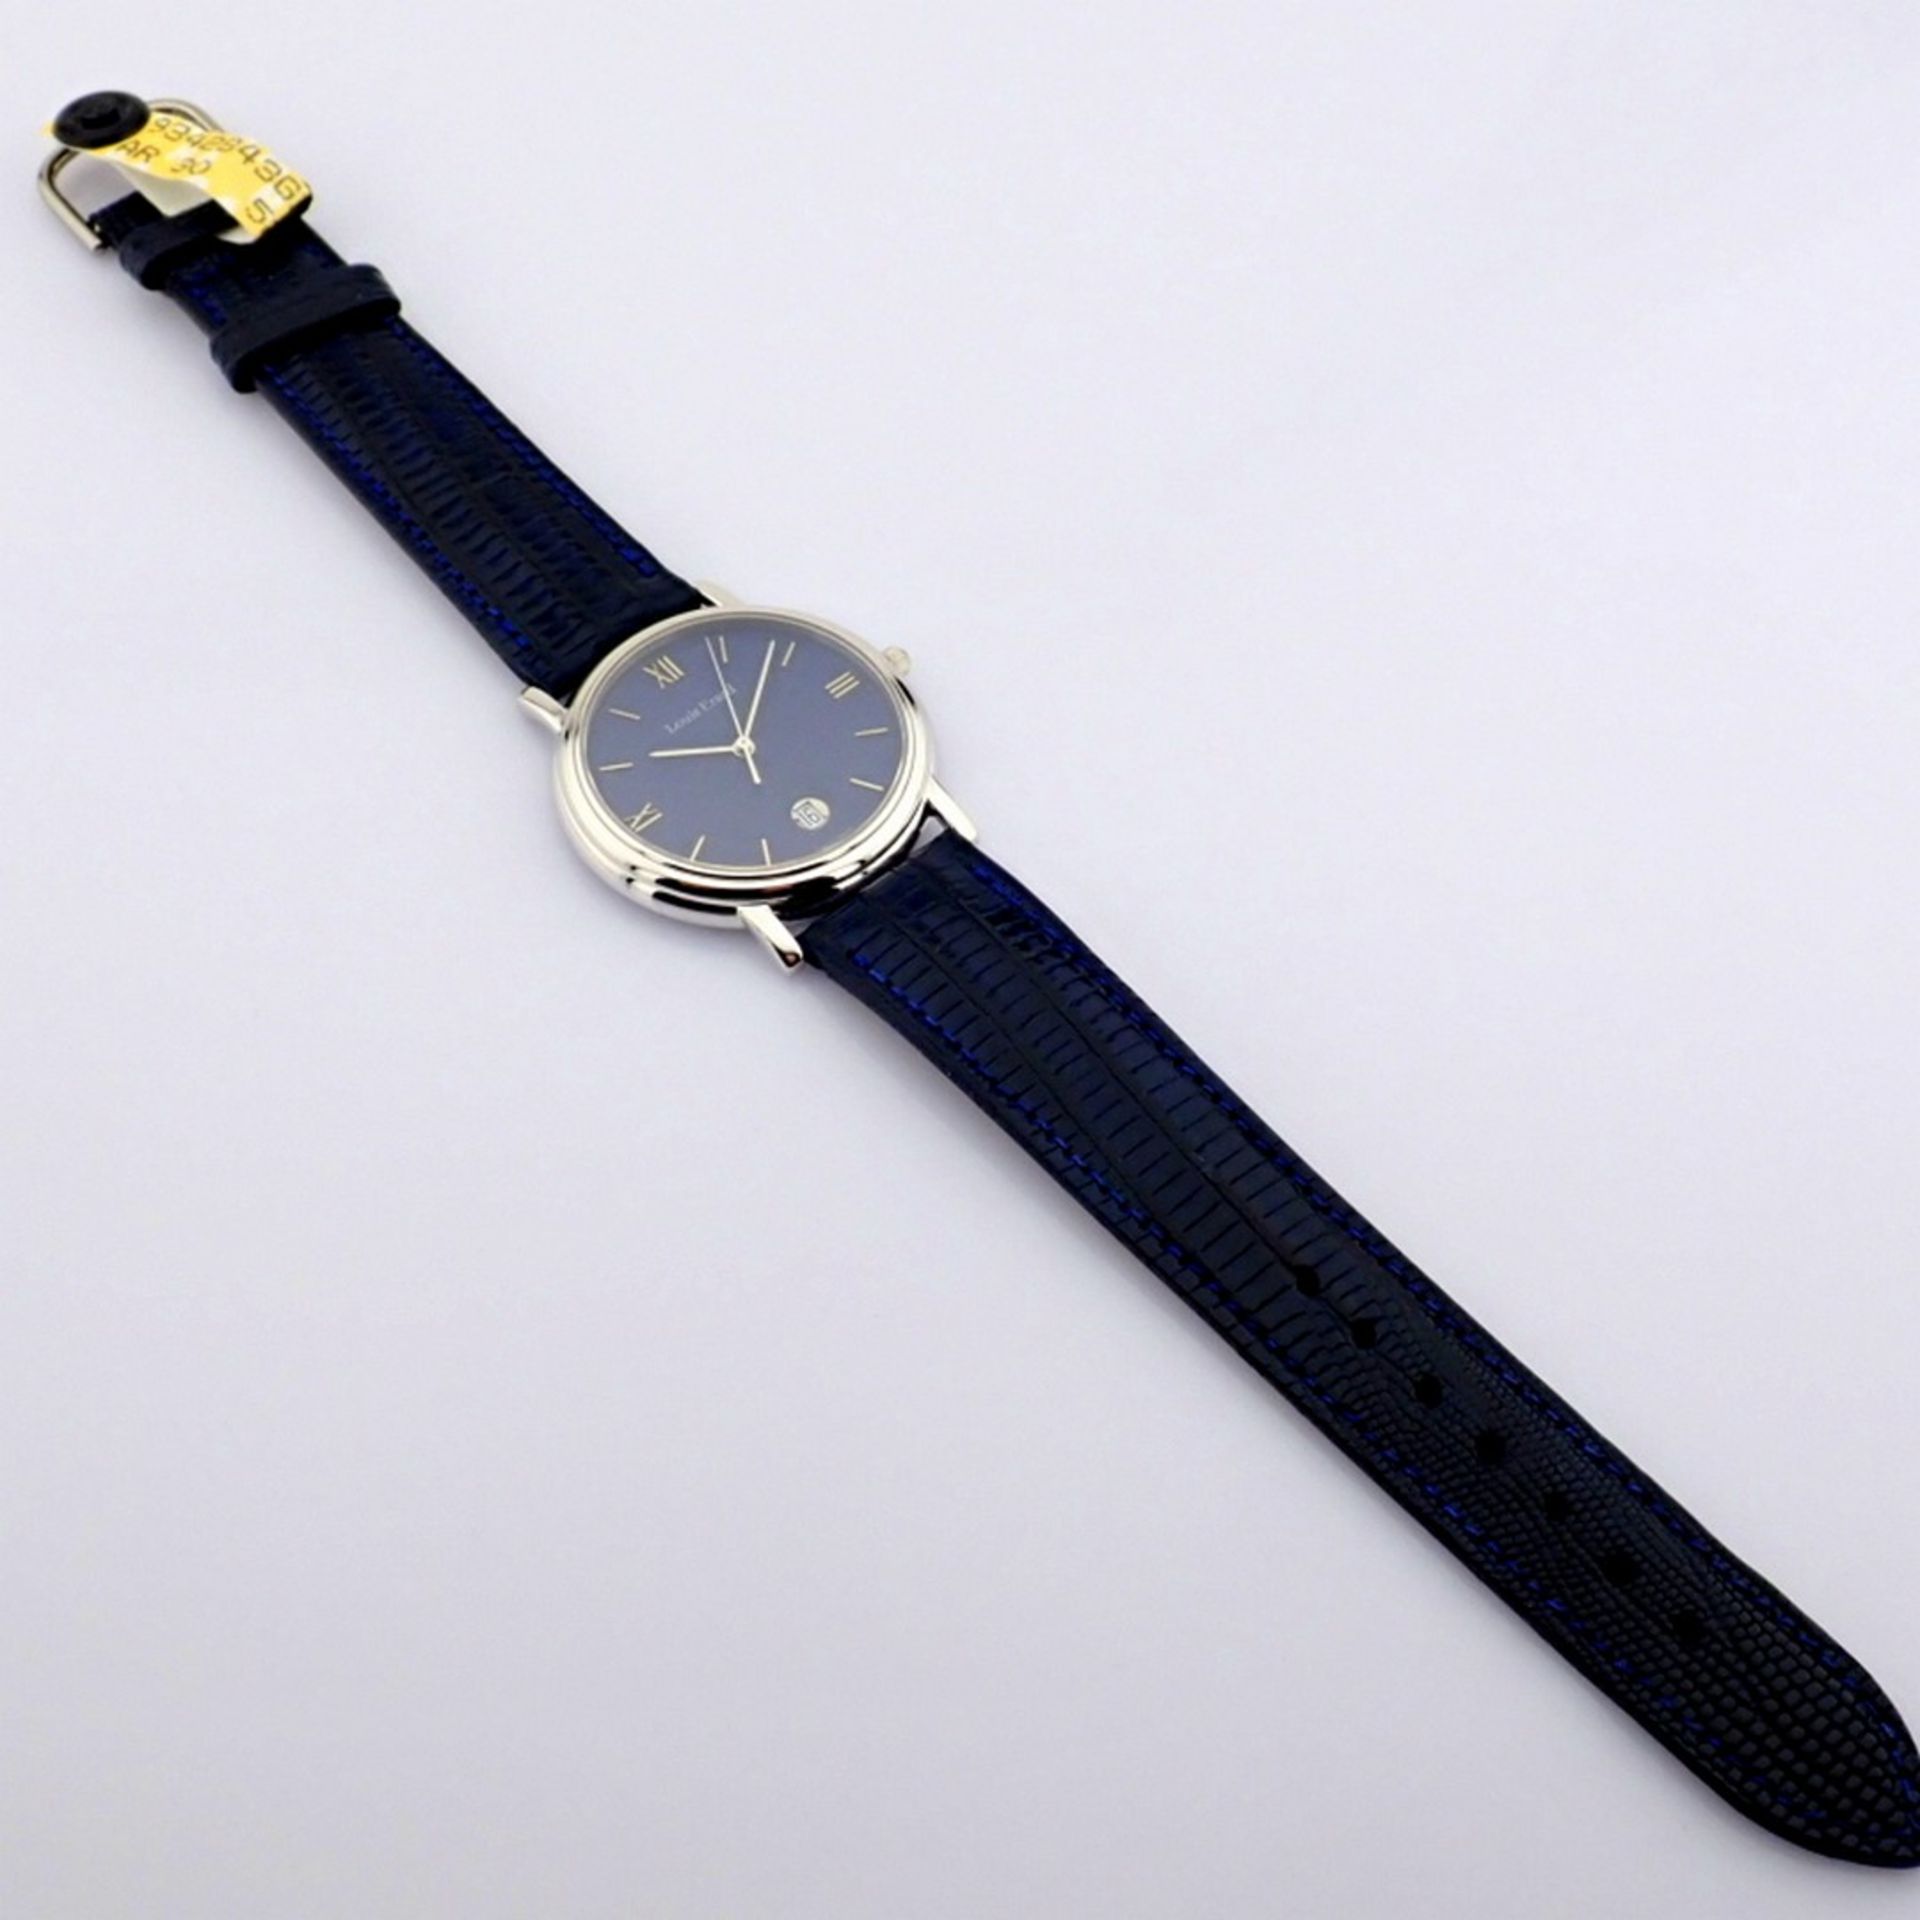 Louis Erard - (Unworn) Gentlemen's Steel Wrist Watch - Image 6 of 9